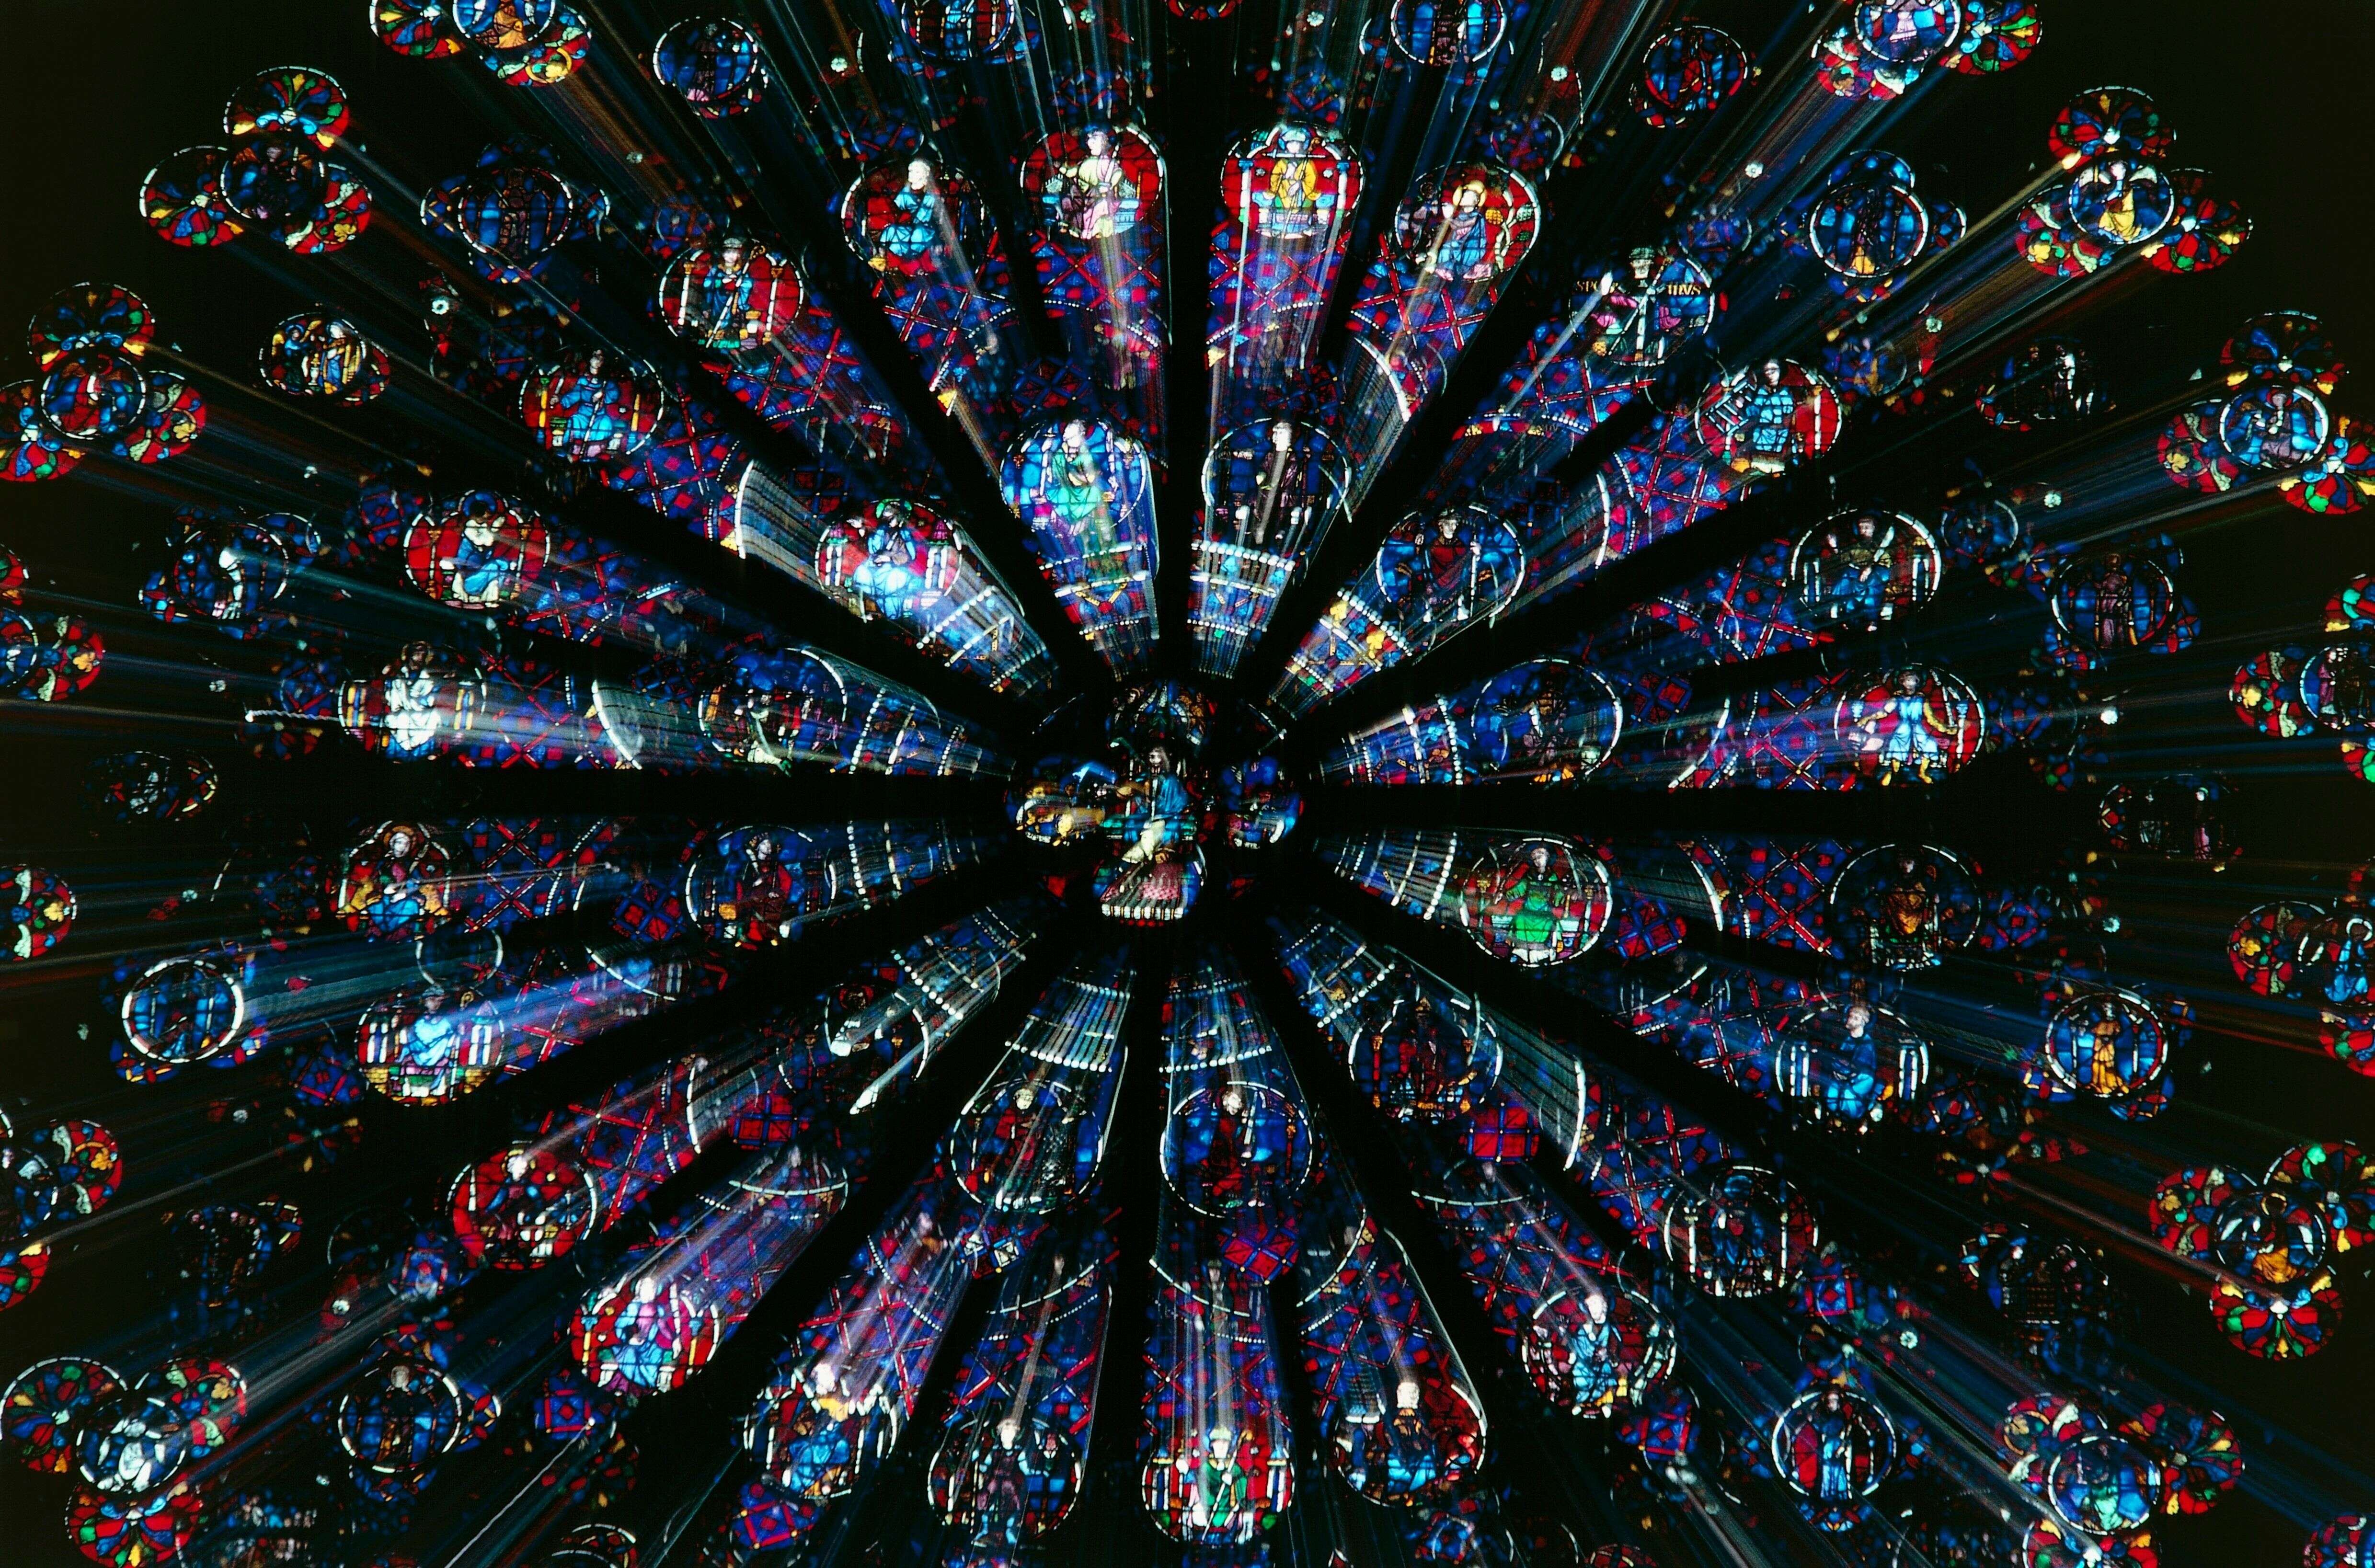 Les trois rosaces monumentales de Notre-Dame de Paris ont survécu au brasier causé par l'incendie du 15 avril.